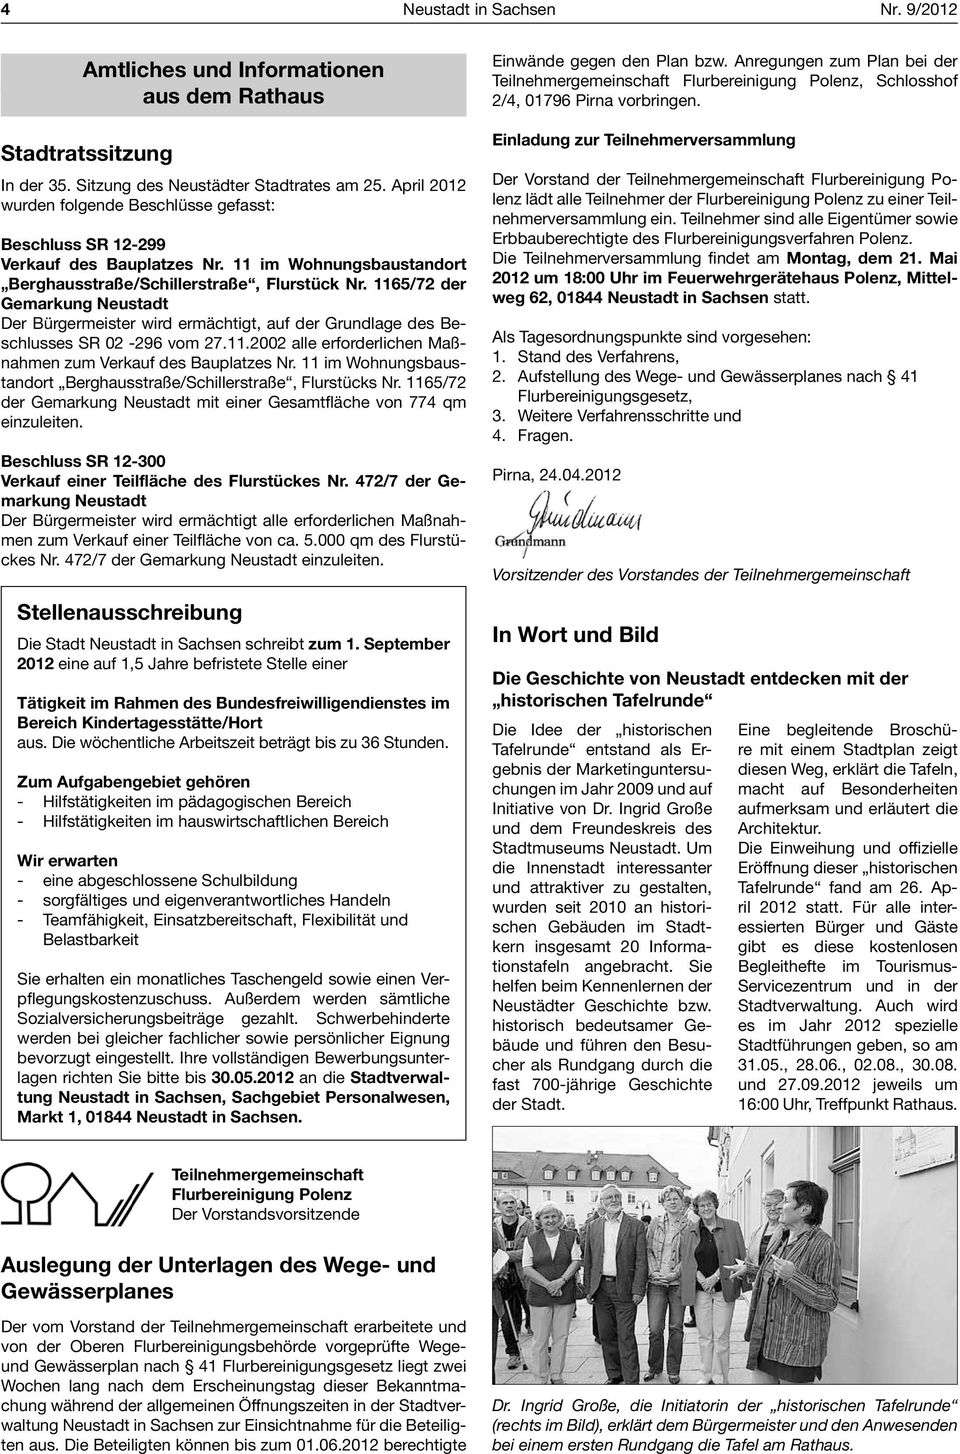 1165/72 der Gemarkung Neustadt Der Bürgermeister wird ermächtigt, auf der Grundlage des Beschlusses SR 02-296 vom 27.11.2002 alle erforderlichen Maßnahmen zum Verkauf des Bauplatzes Nr.